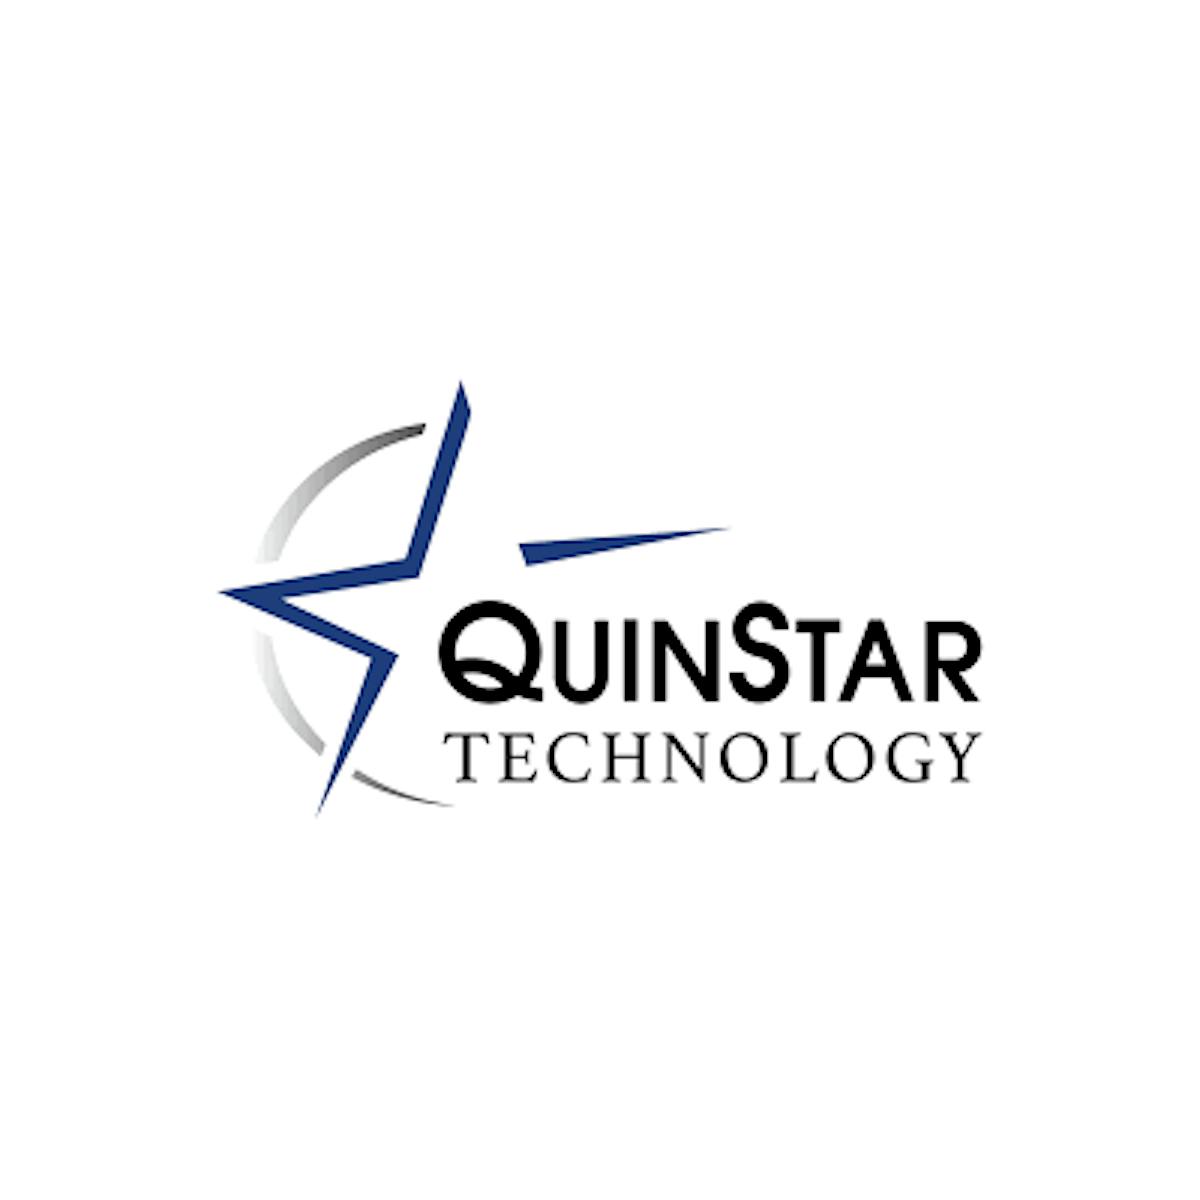 Quinstar Technology